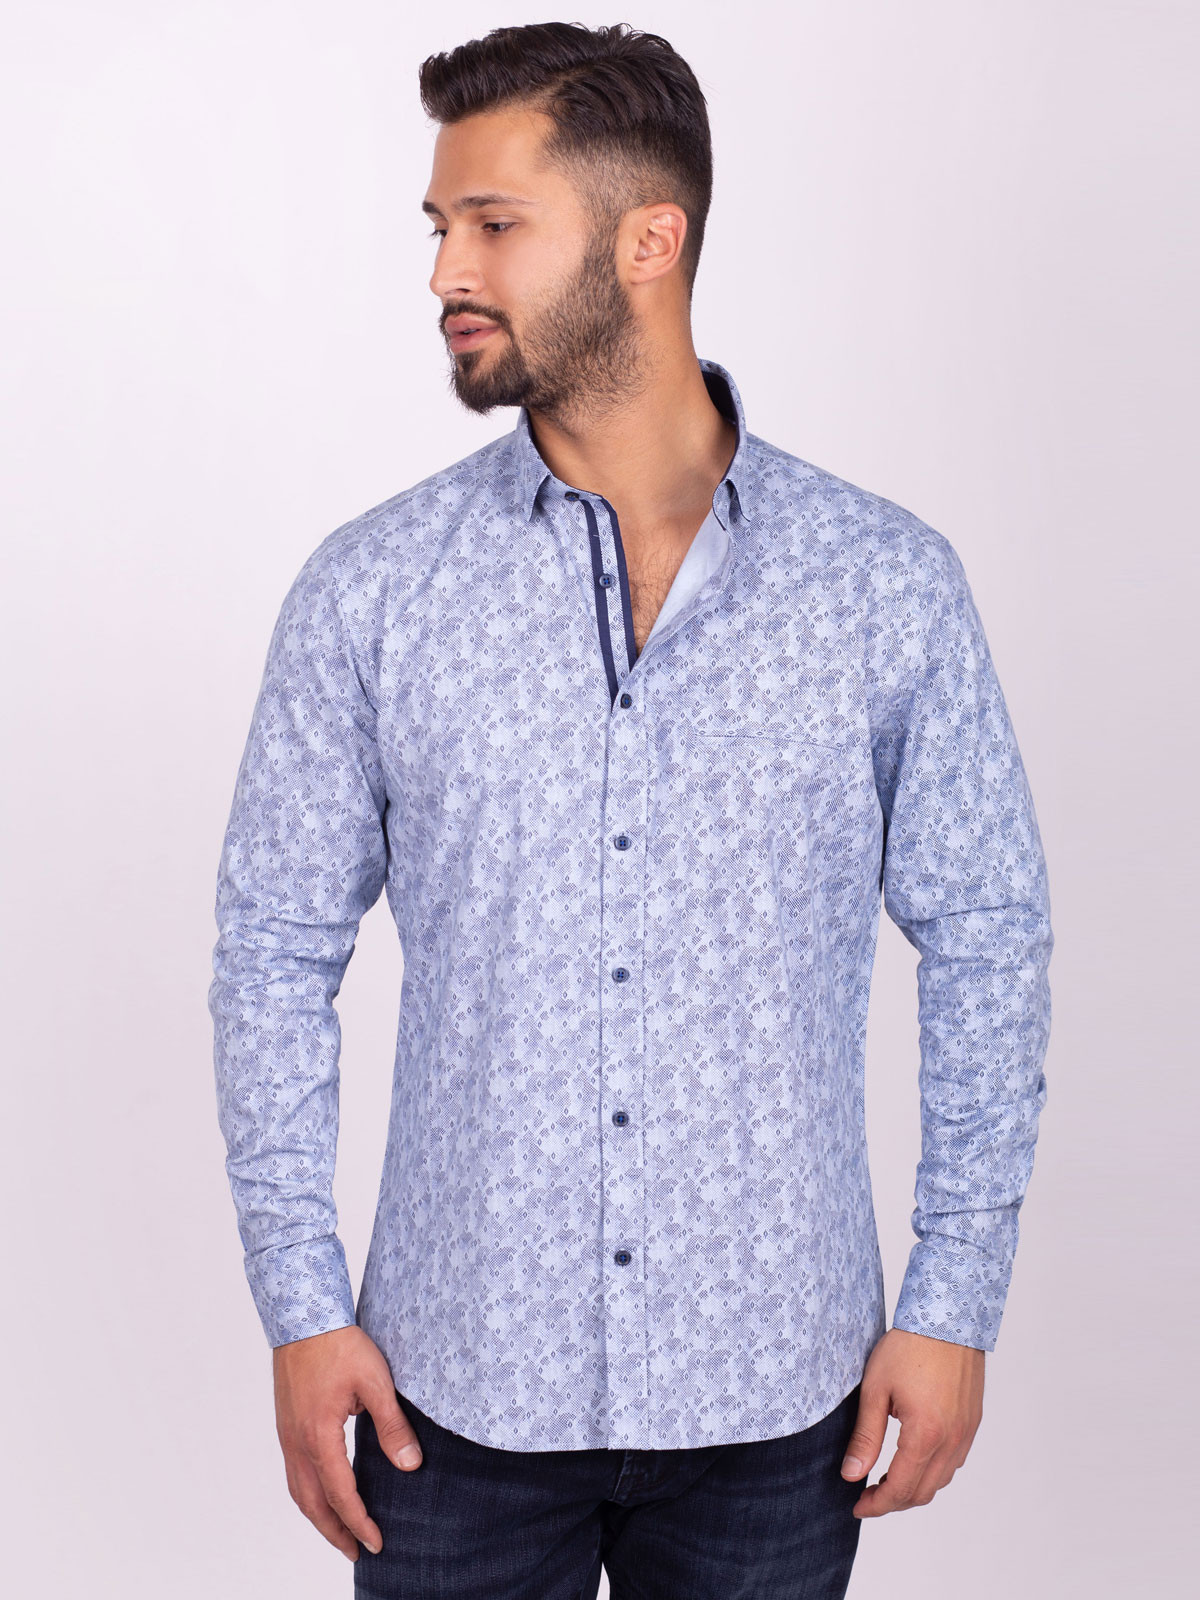 Μπλε πουκάμισο με στάμπα σχημάτων και πο - 21520 € 47.24 img1